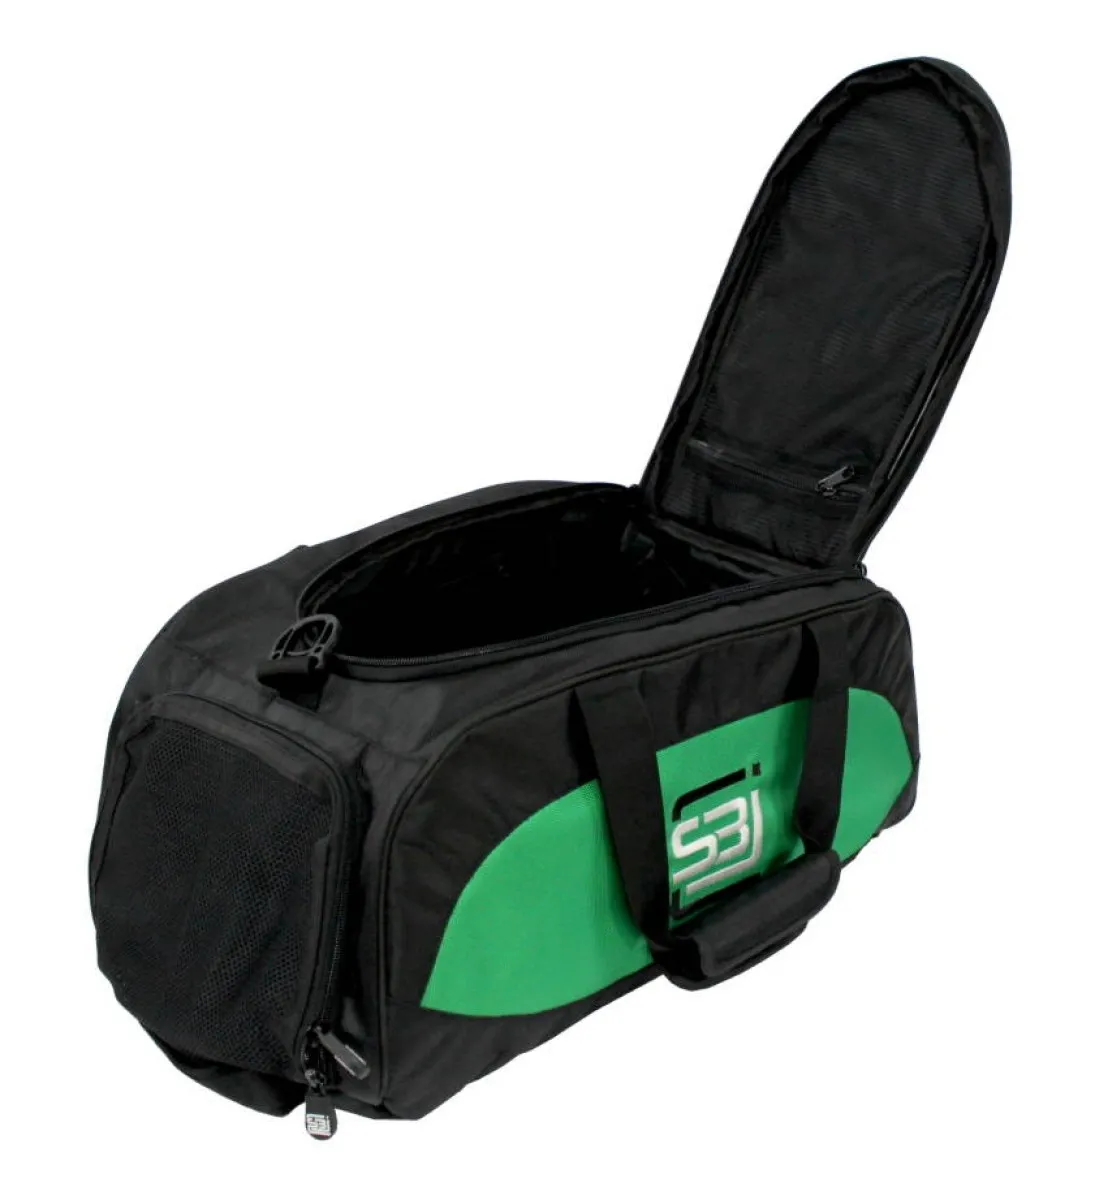 Sac de sport avec fonction sac à dos en noir avec empiècements latéraux verts